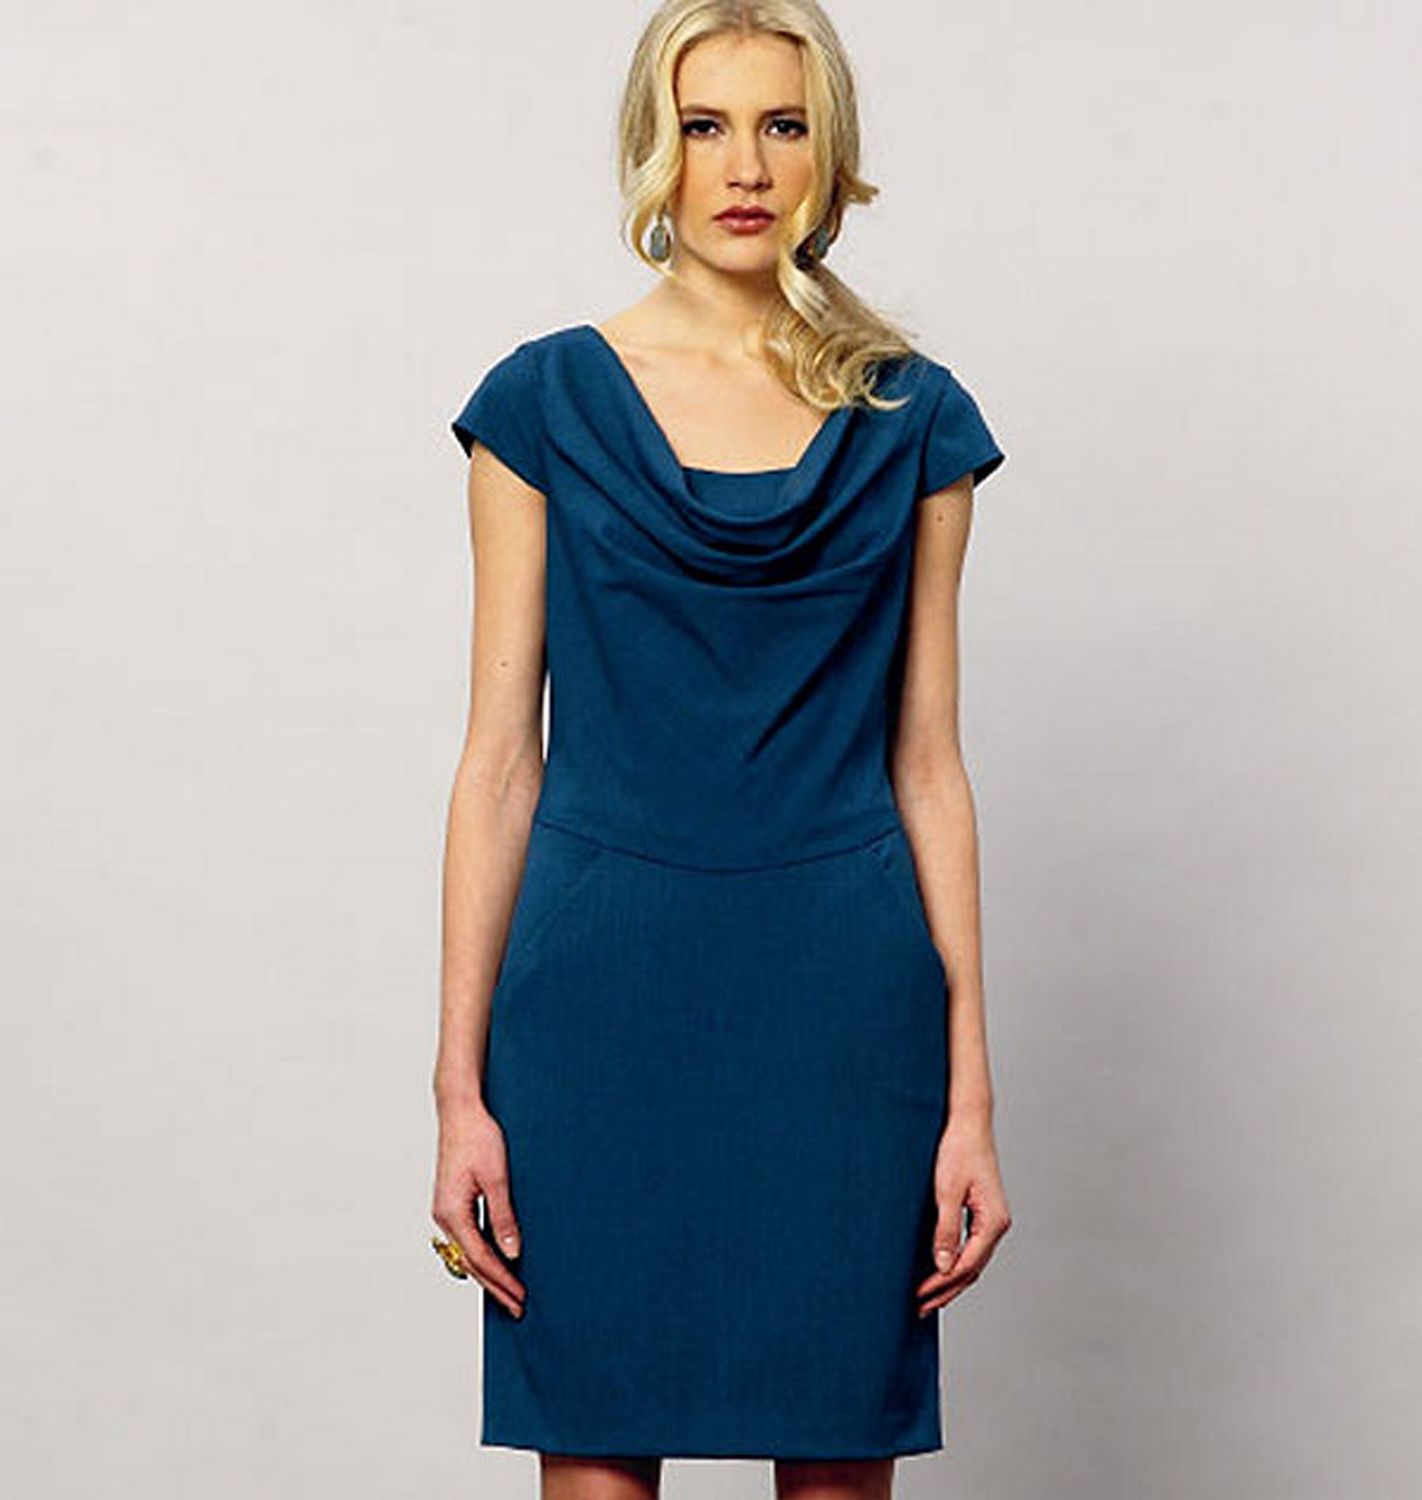 Vogue Women's Dress Sewing Pattern, 8873 at John Lewis